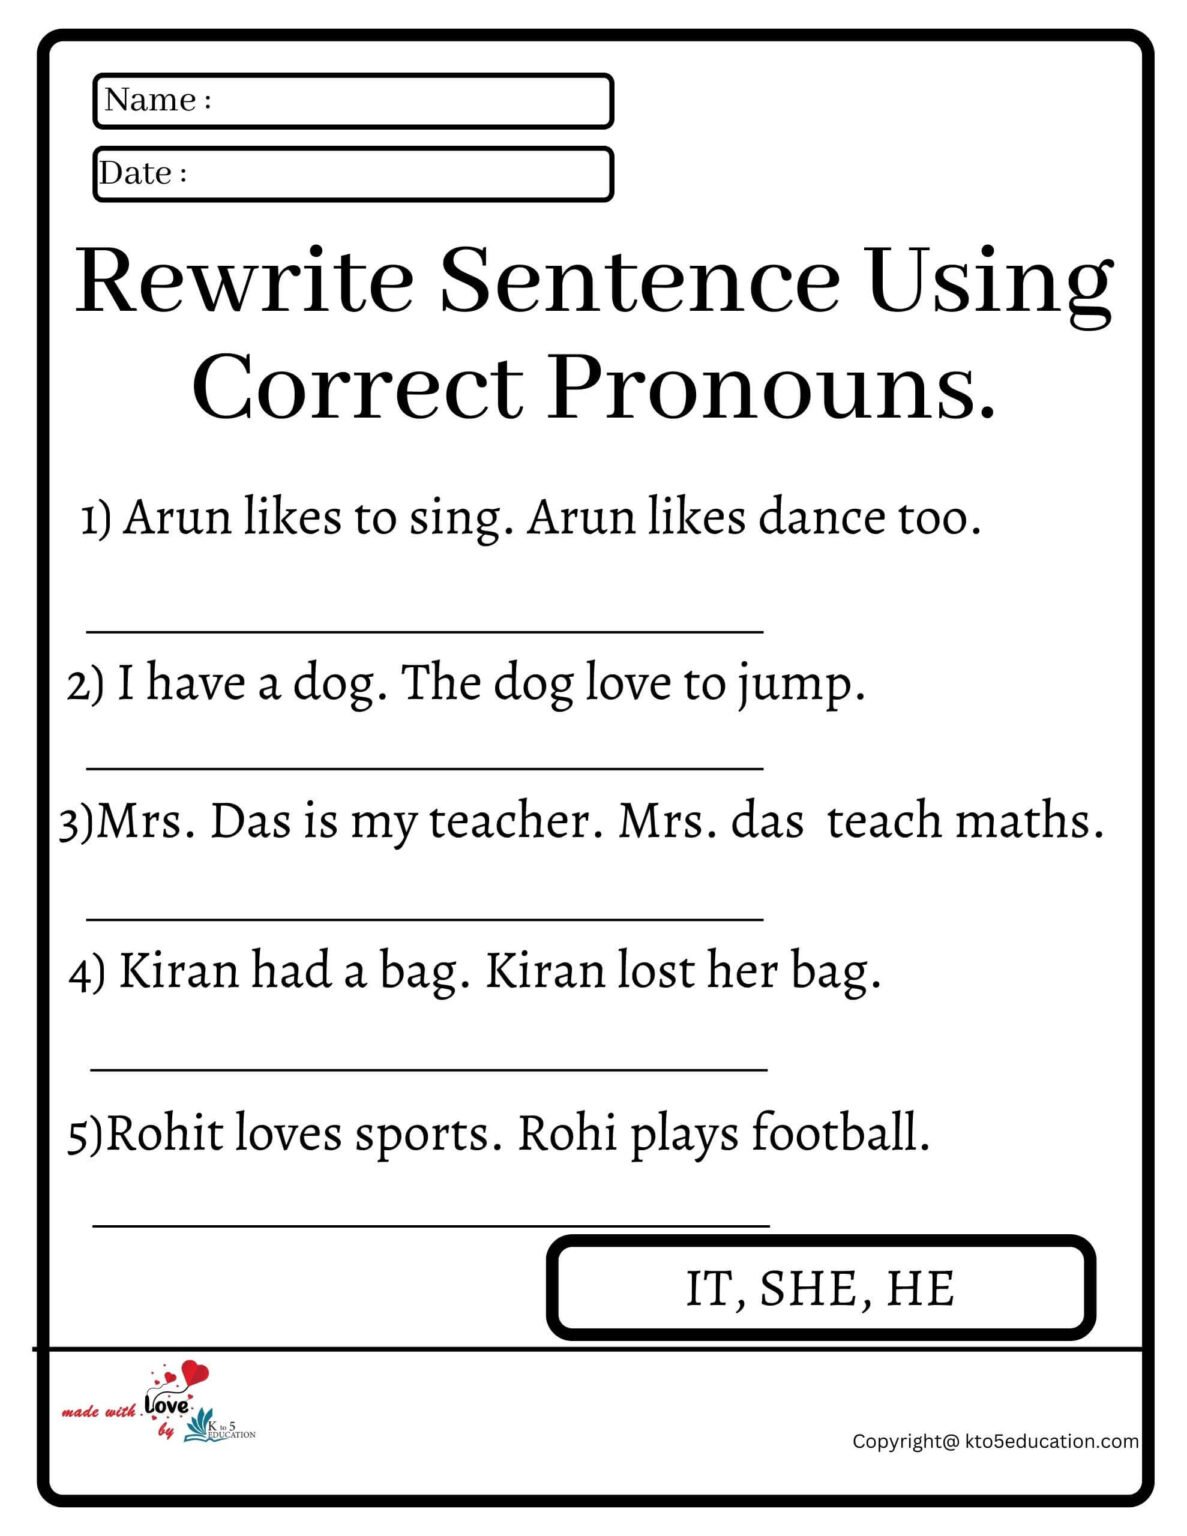 rewrite-sentence-using-correct-pronouns-worksheet-free